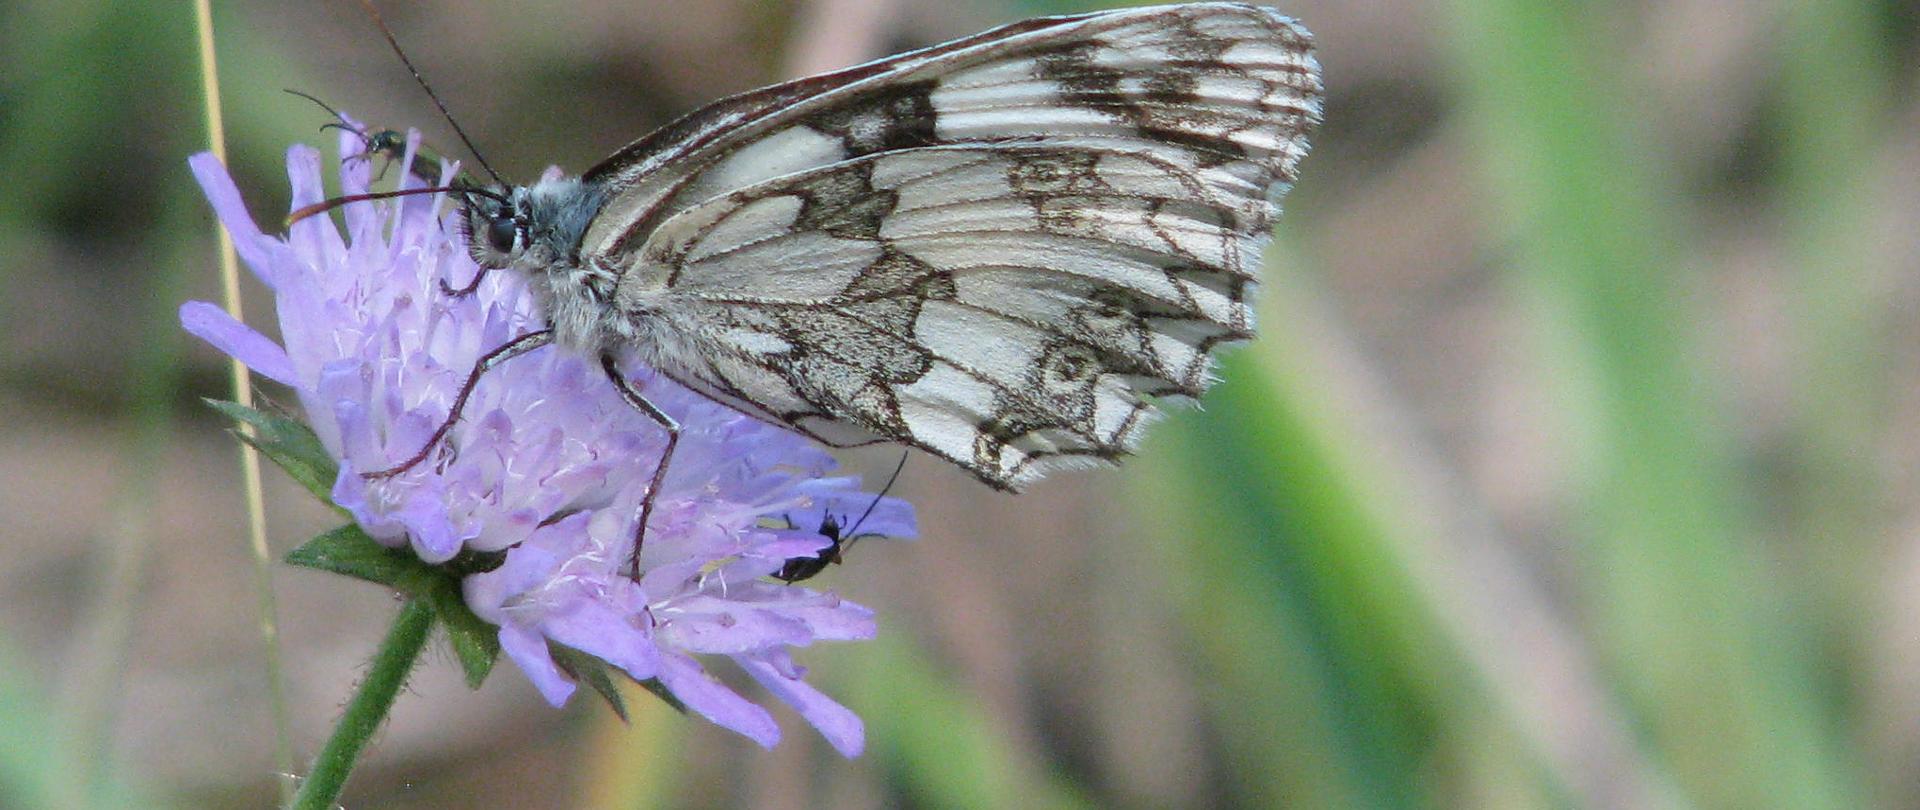 W otoczeniu wielu gatunków motyli Polowiec szachownica - motyl dzienny z rodziny rusałkowatych, spija nektar z rureczek kwiatu świerzbnicy polnej koloru blado fioletowego